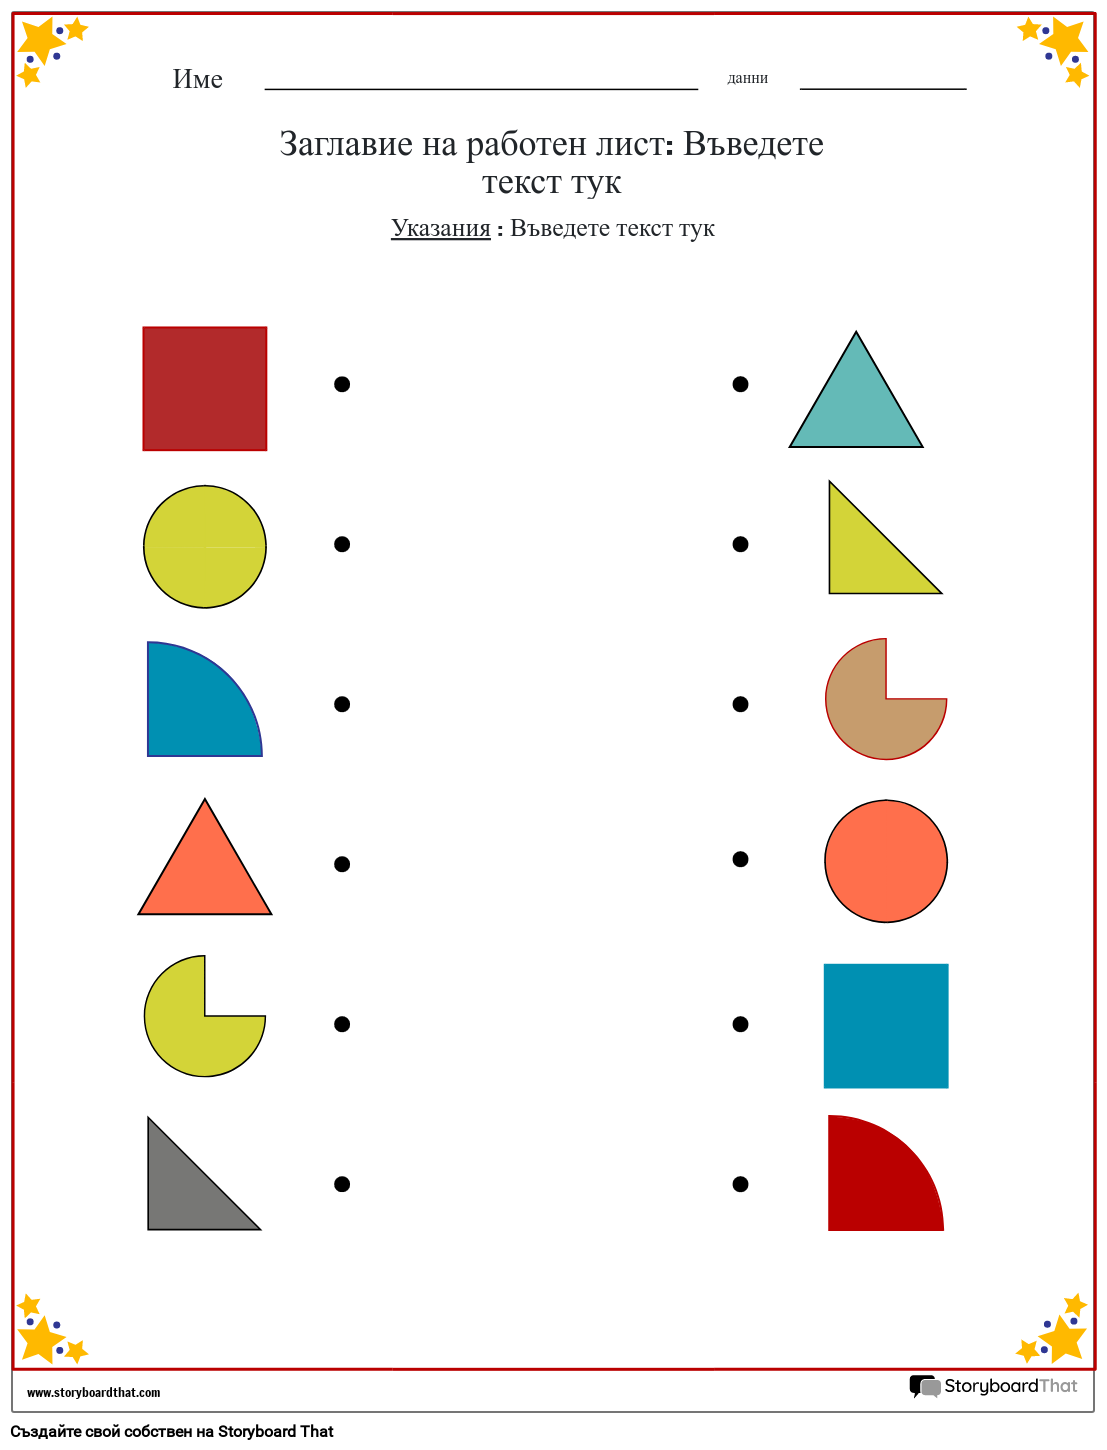 Работен лист за съответстващи цветове на форми